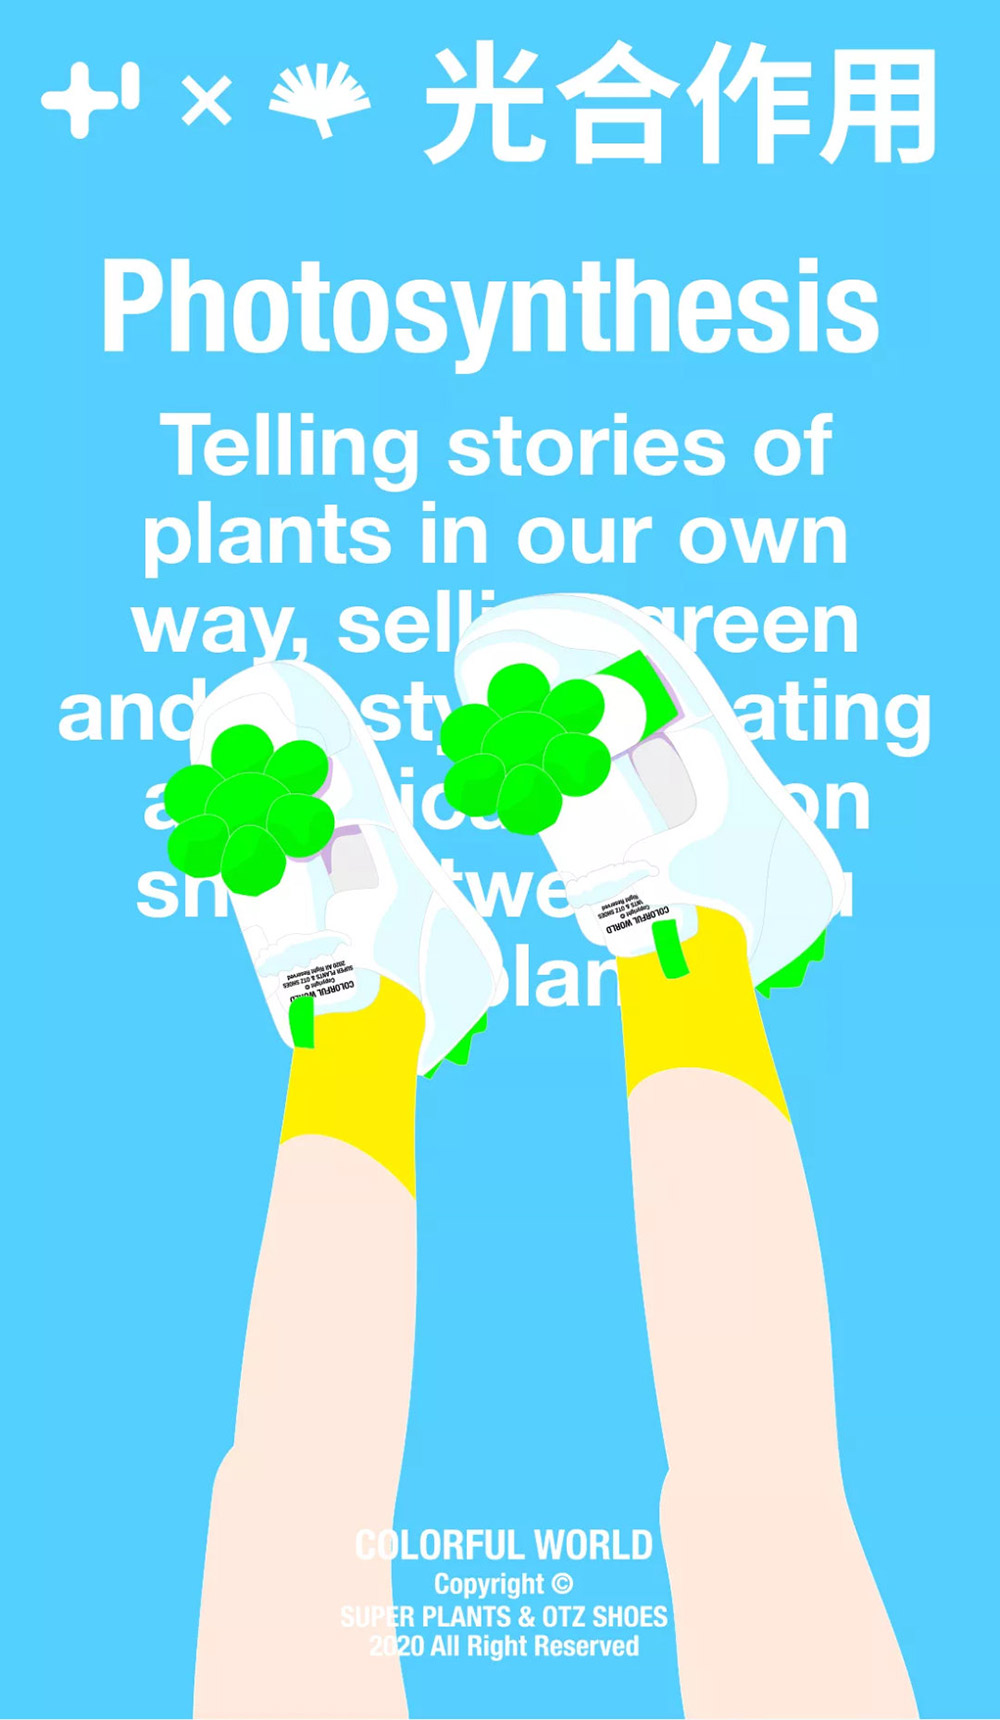 少即是多！18张超级植物公司海报